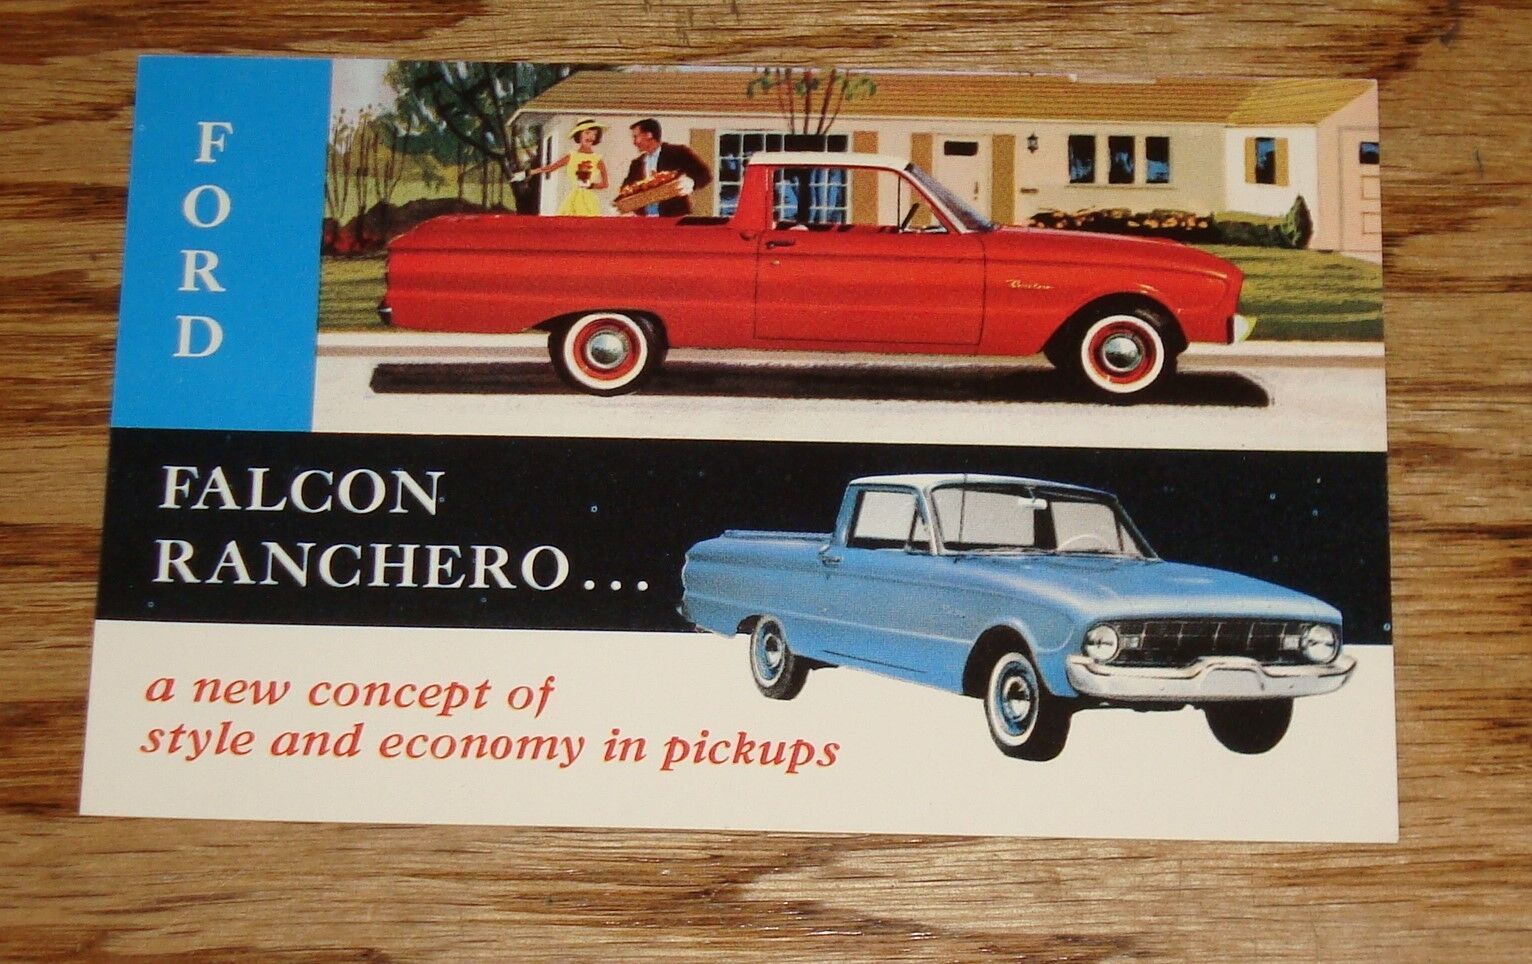 Original 1960 Ford Falcon Ranchero Pickup Postcard 60